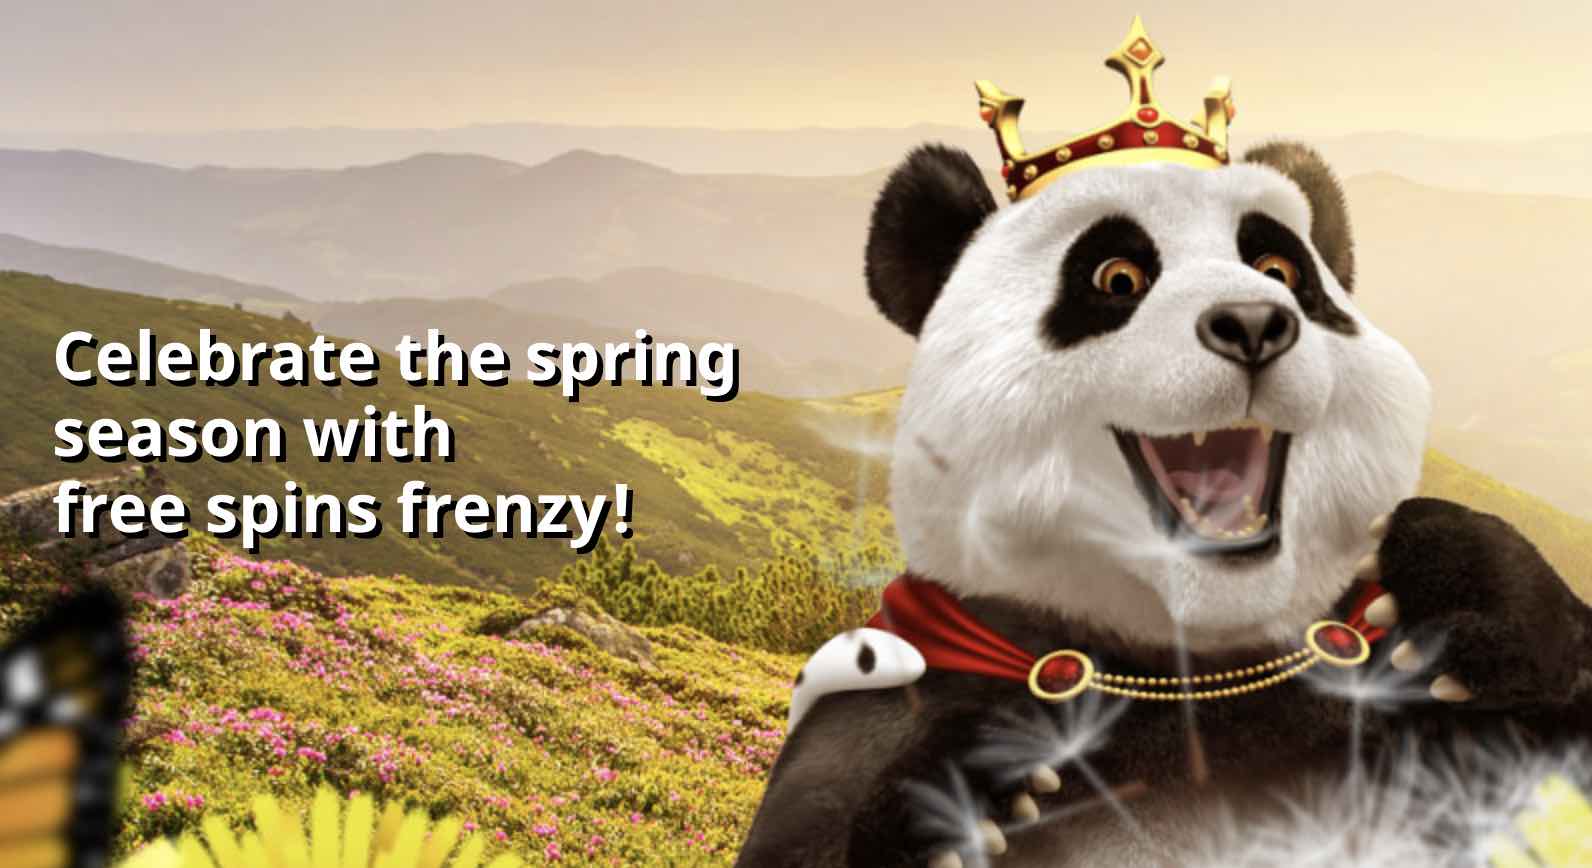 Royal Panda Spring Promotion 2020